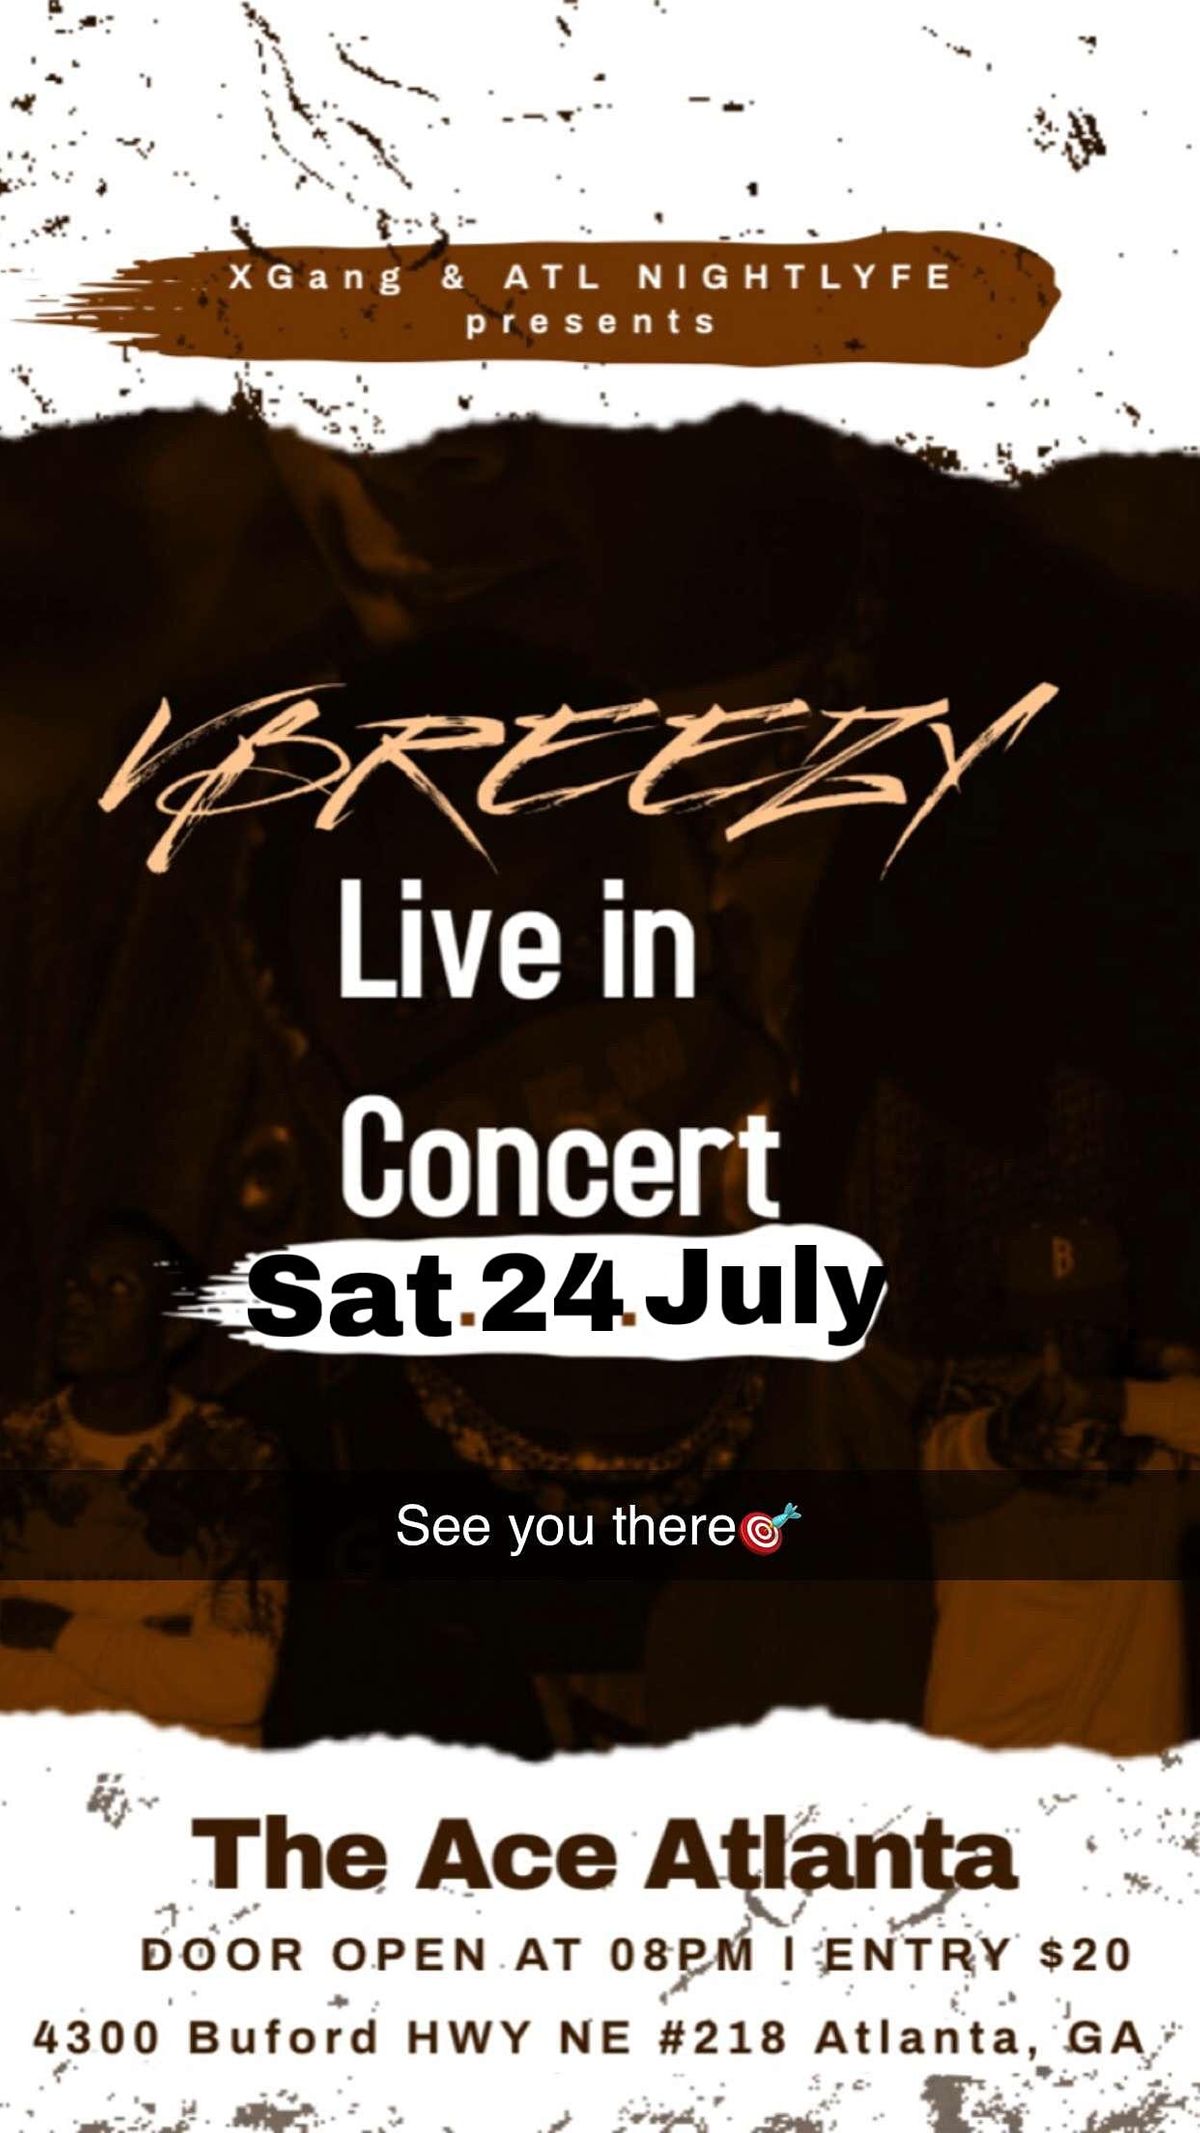 VBreezy Live in Concert!